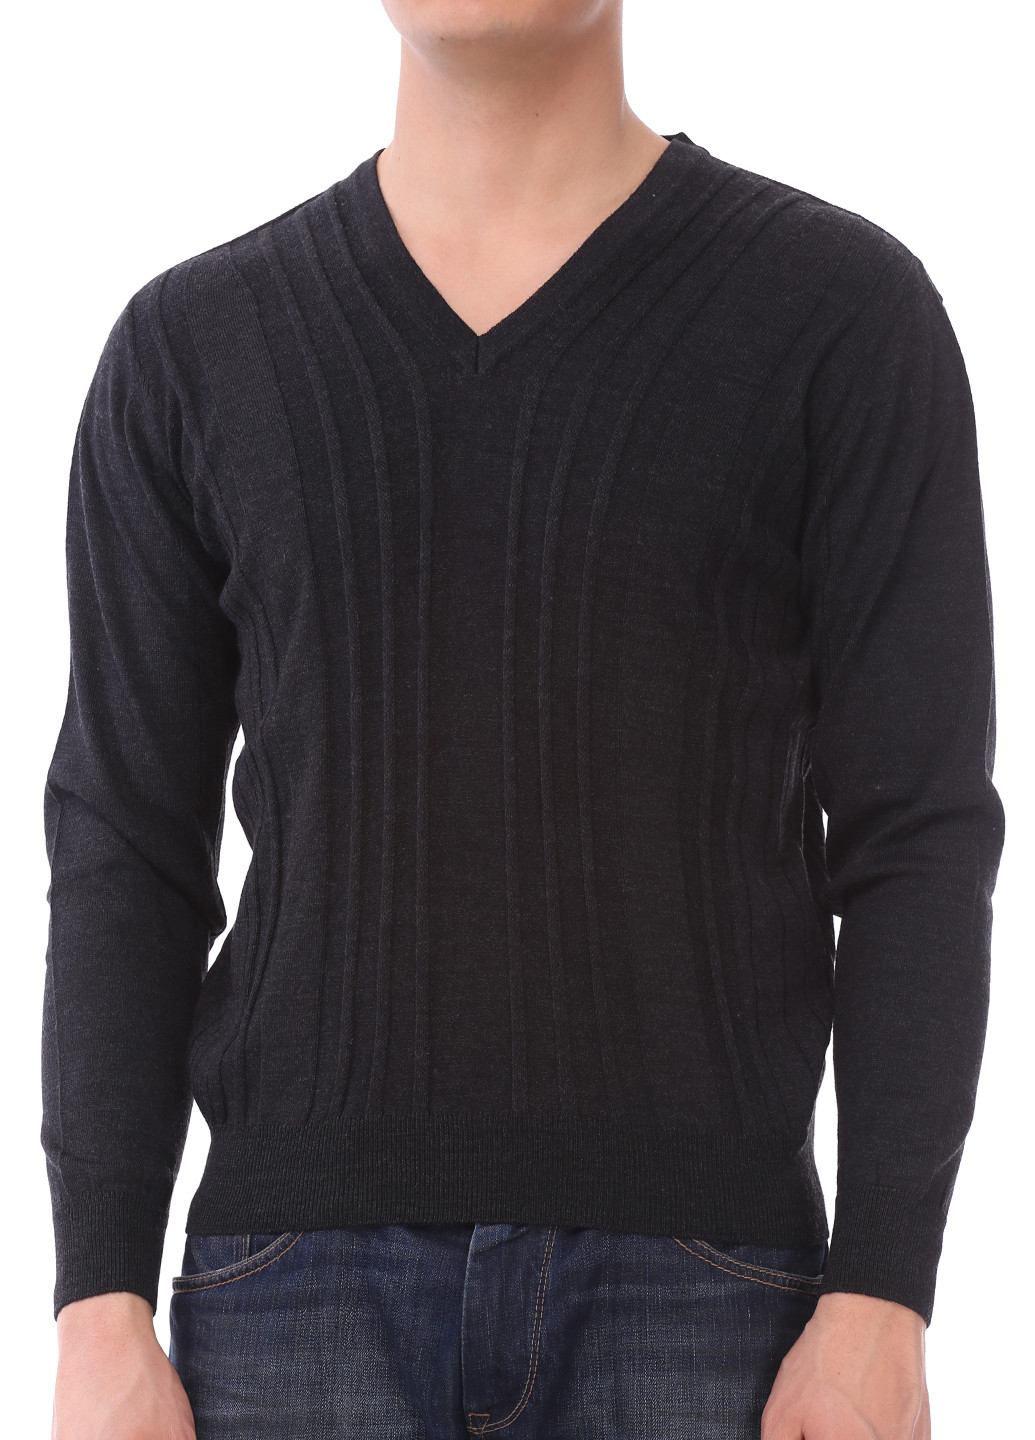 Черный демисезонный пуловер пуловер Iror